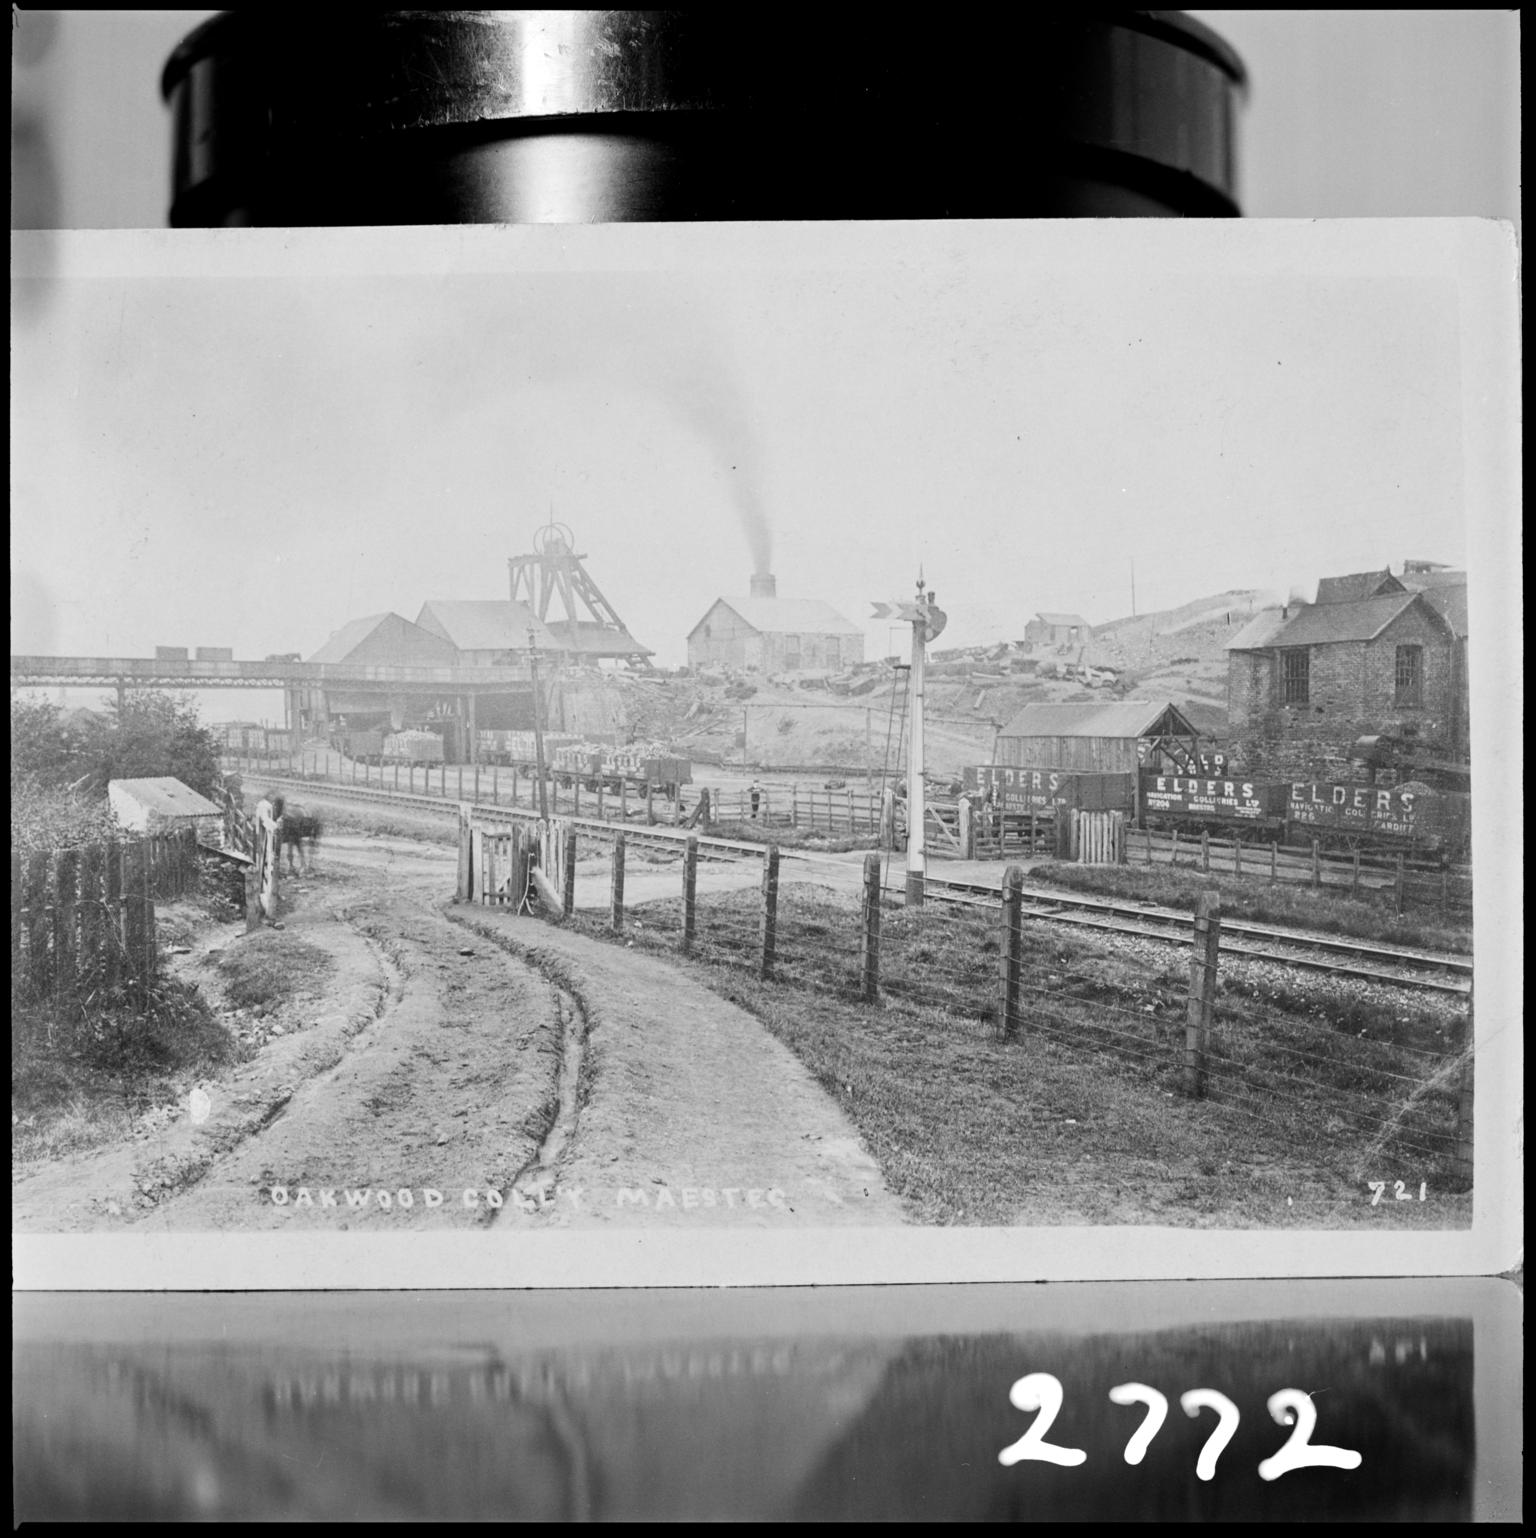 Oakwood Colliery, film negative